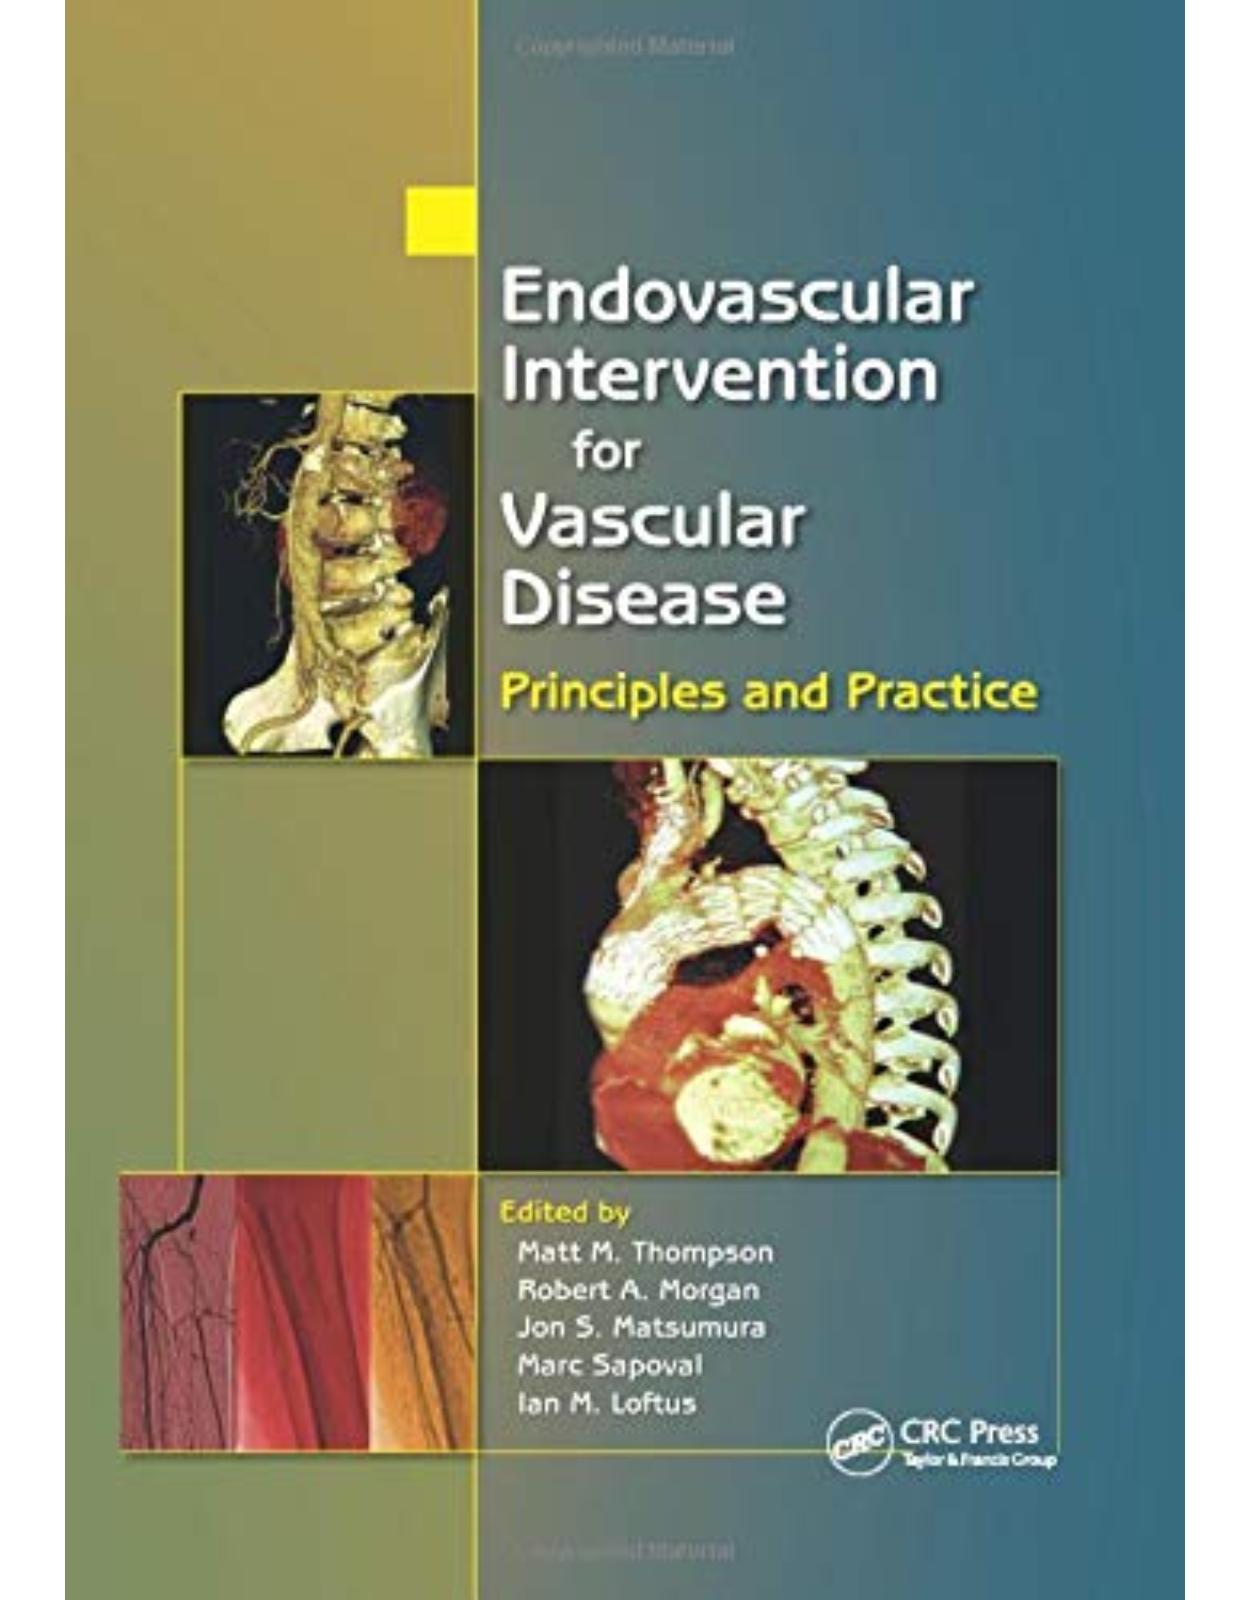 Endovascular Intervention for Vascular Disease